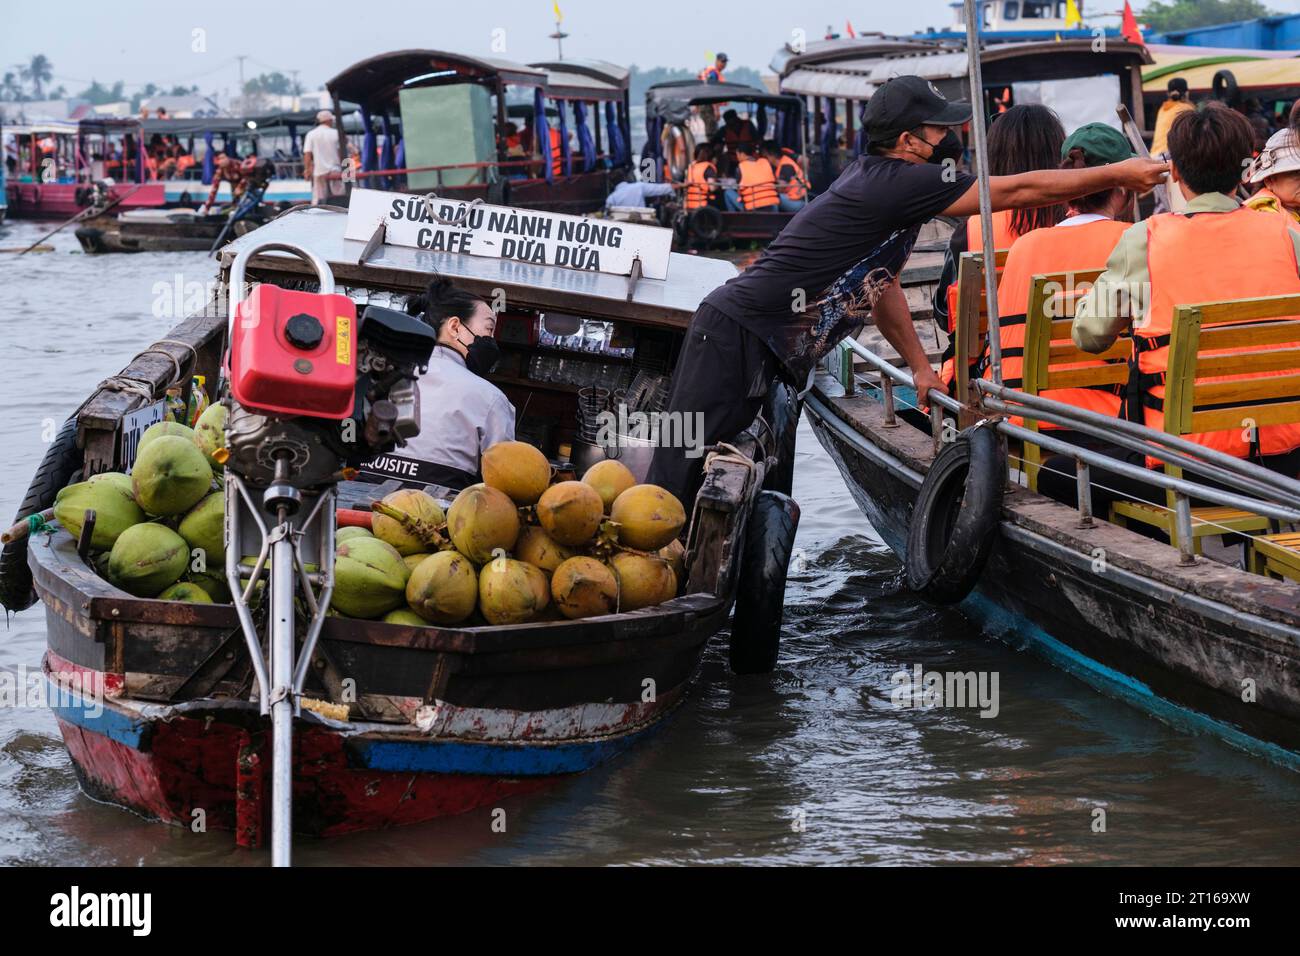 Scène du marché flottant de Phong Dien, près de CAN Tho, Vietnam. Vendeur vendant des noix de coco à Tourist Boat. Banque D'Images